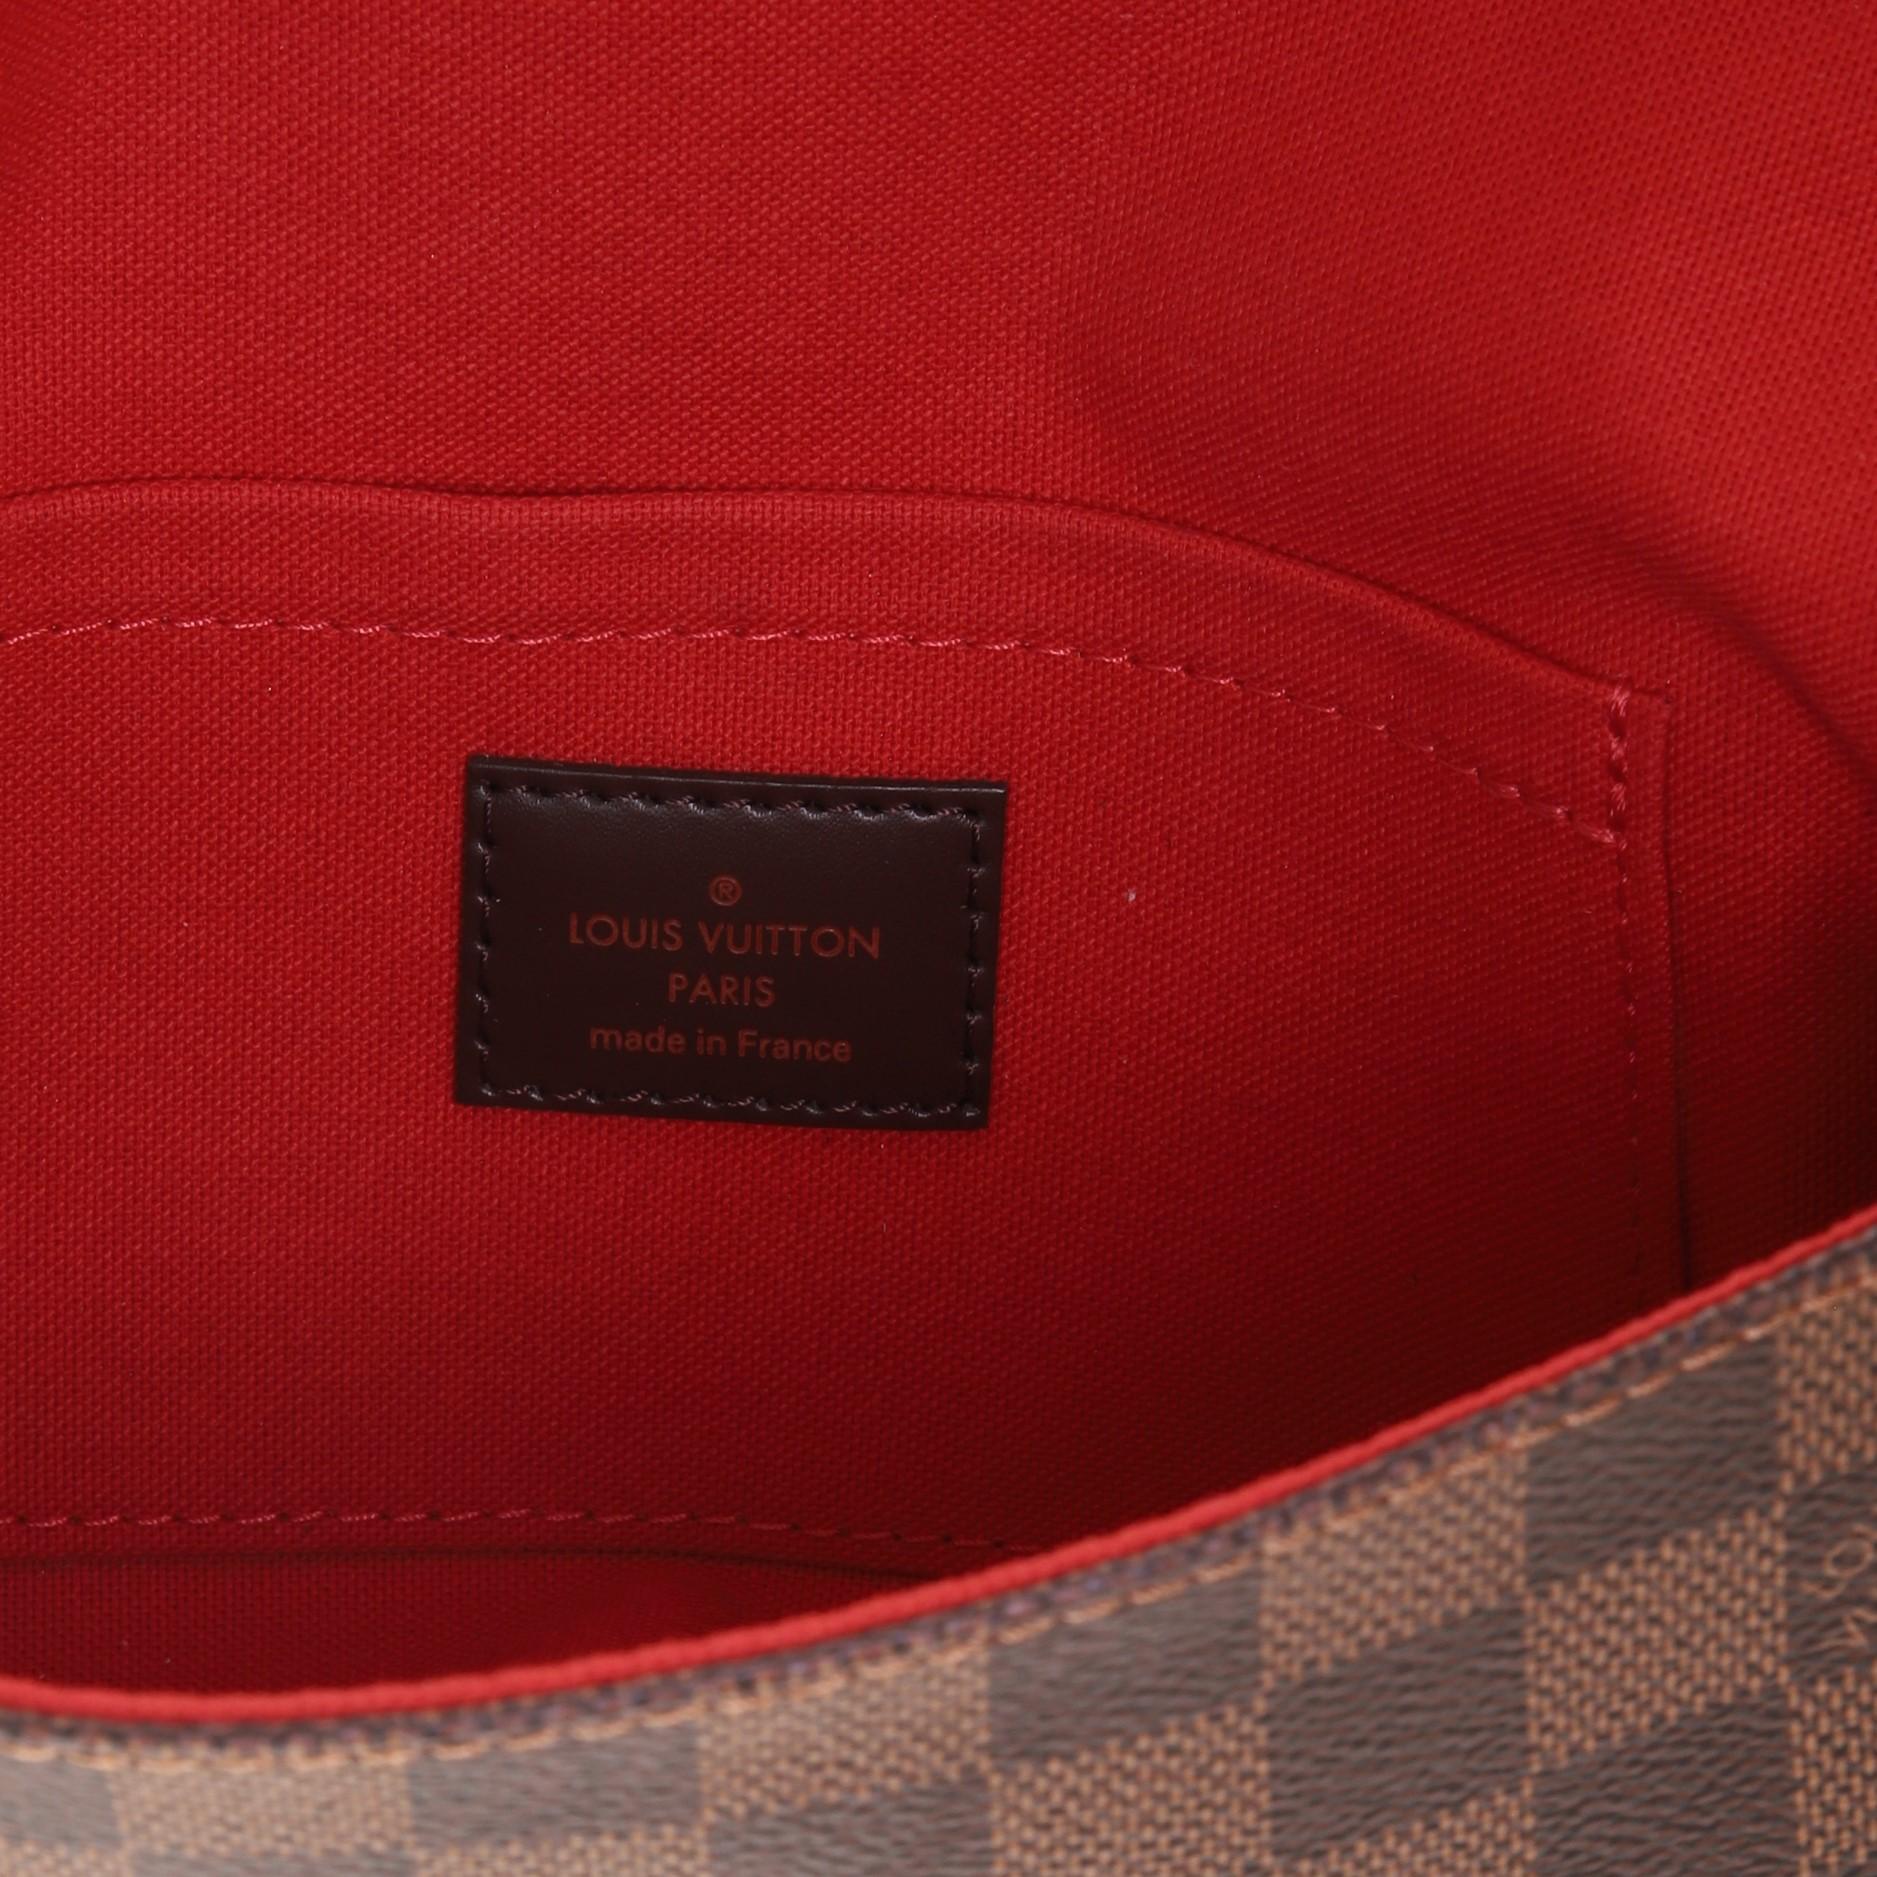 Brown Louis Vuitton Favorite Handbag Damier PM